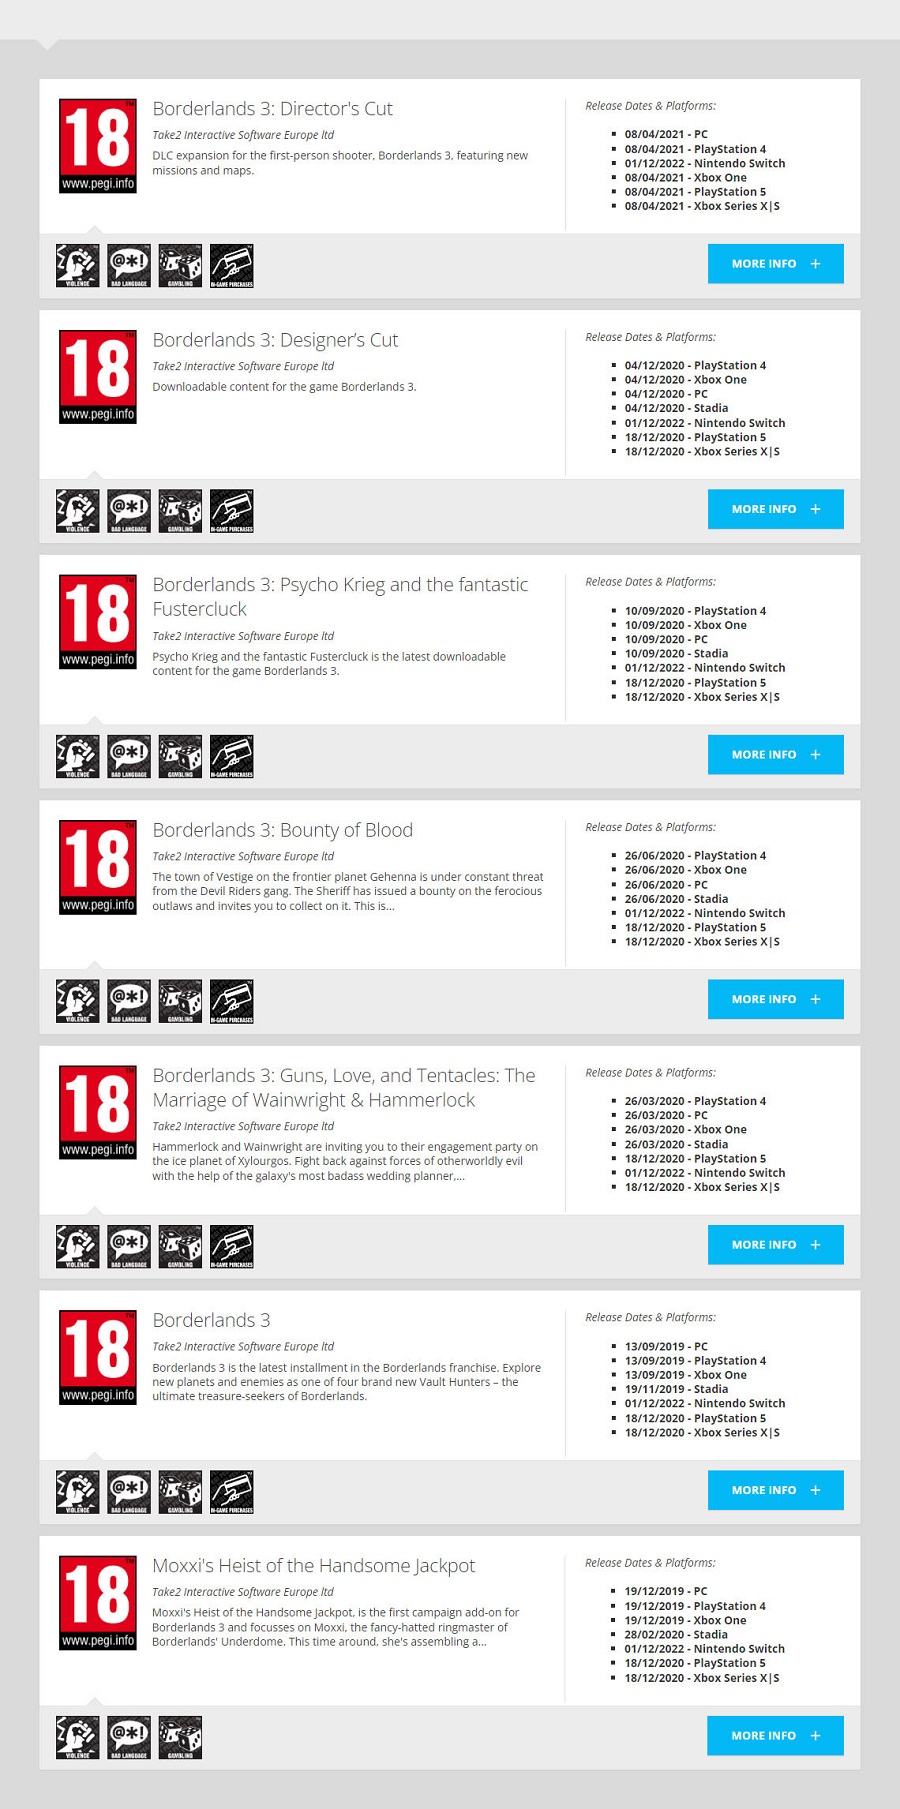 ¿Próximo anuncio? La versión de Borderlands 3 para Nintendo Switch ha recibido la calificación por edades de la Comisión Europea PEGI-2